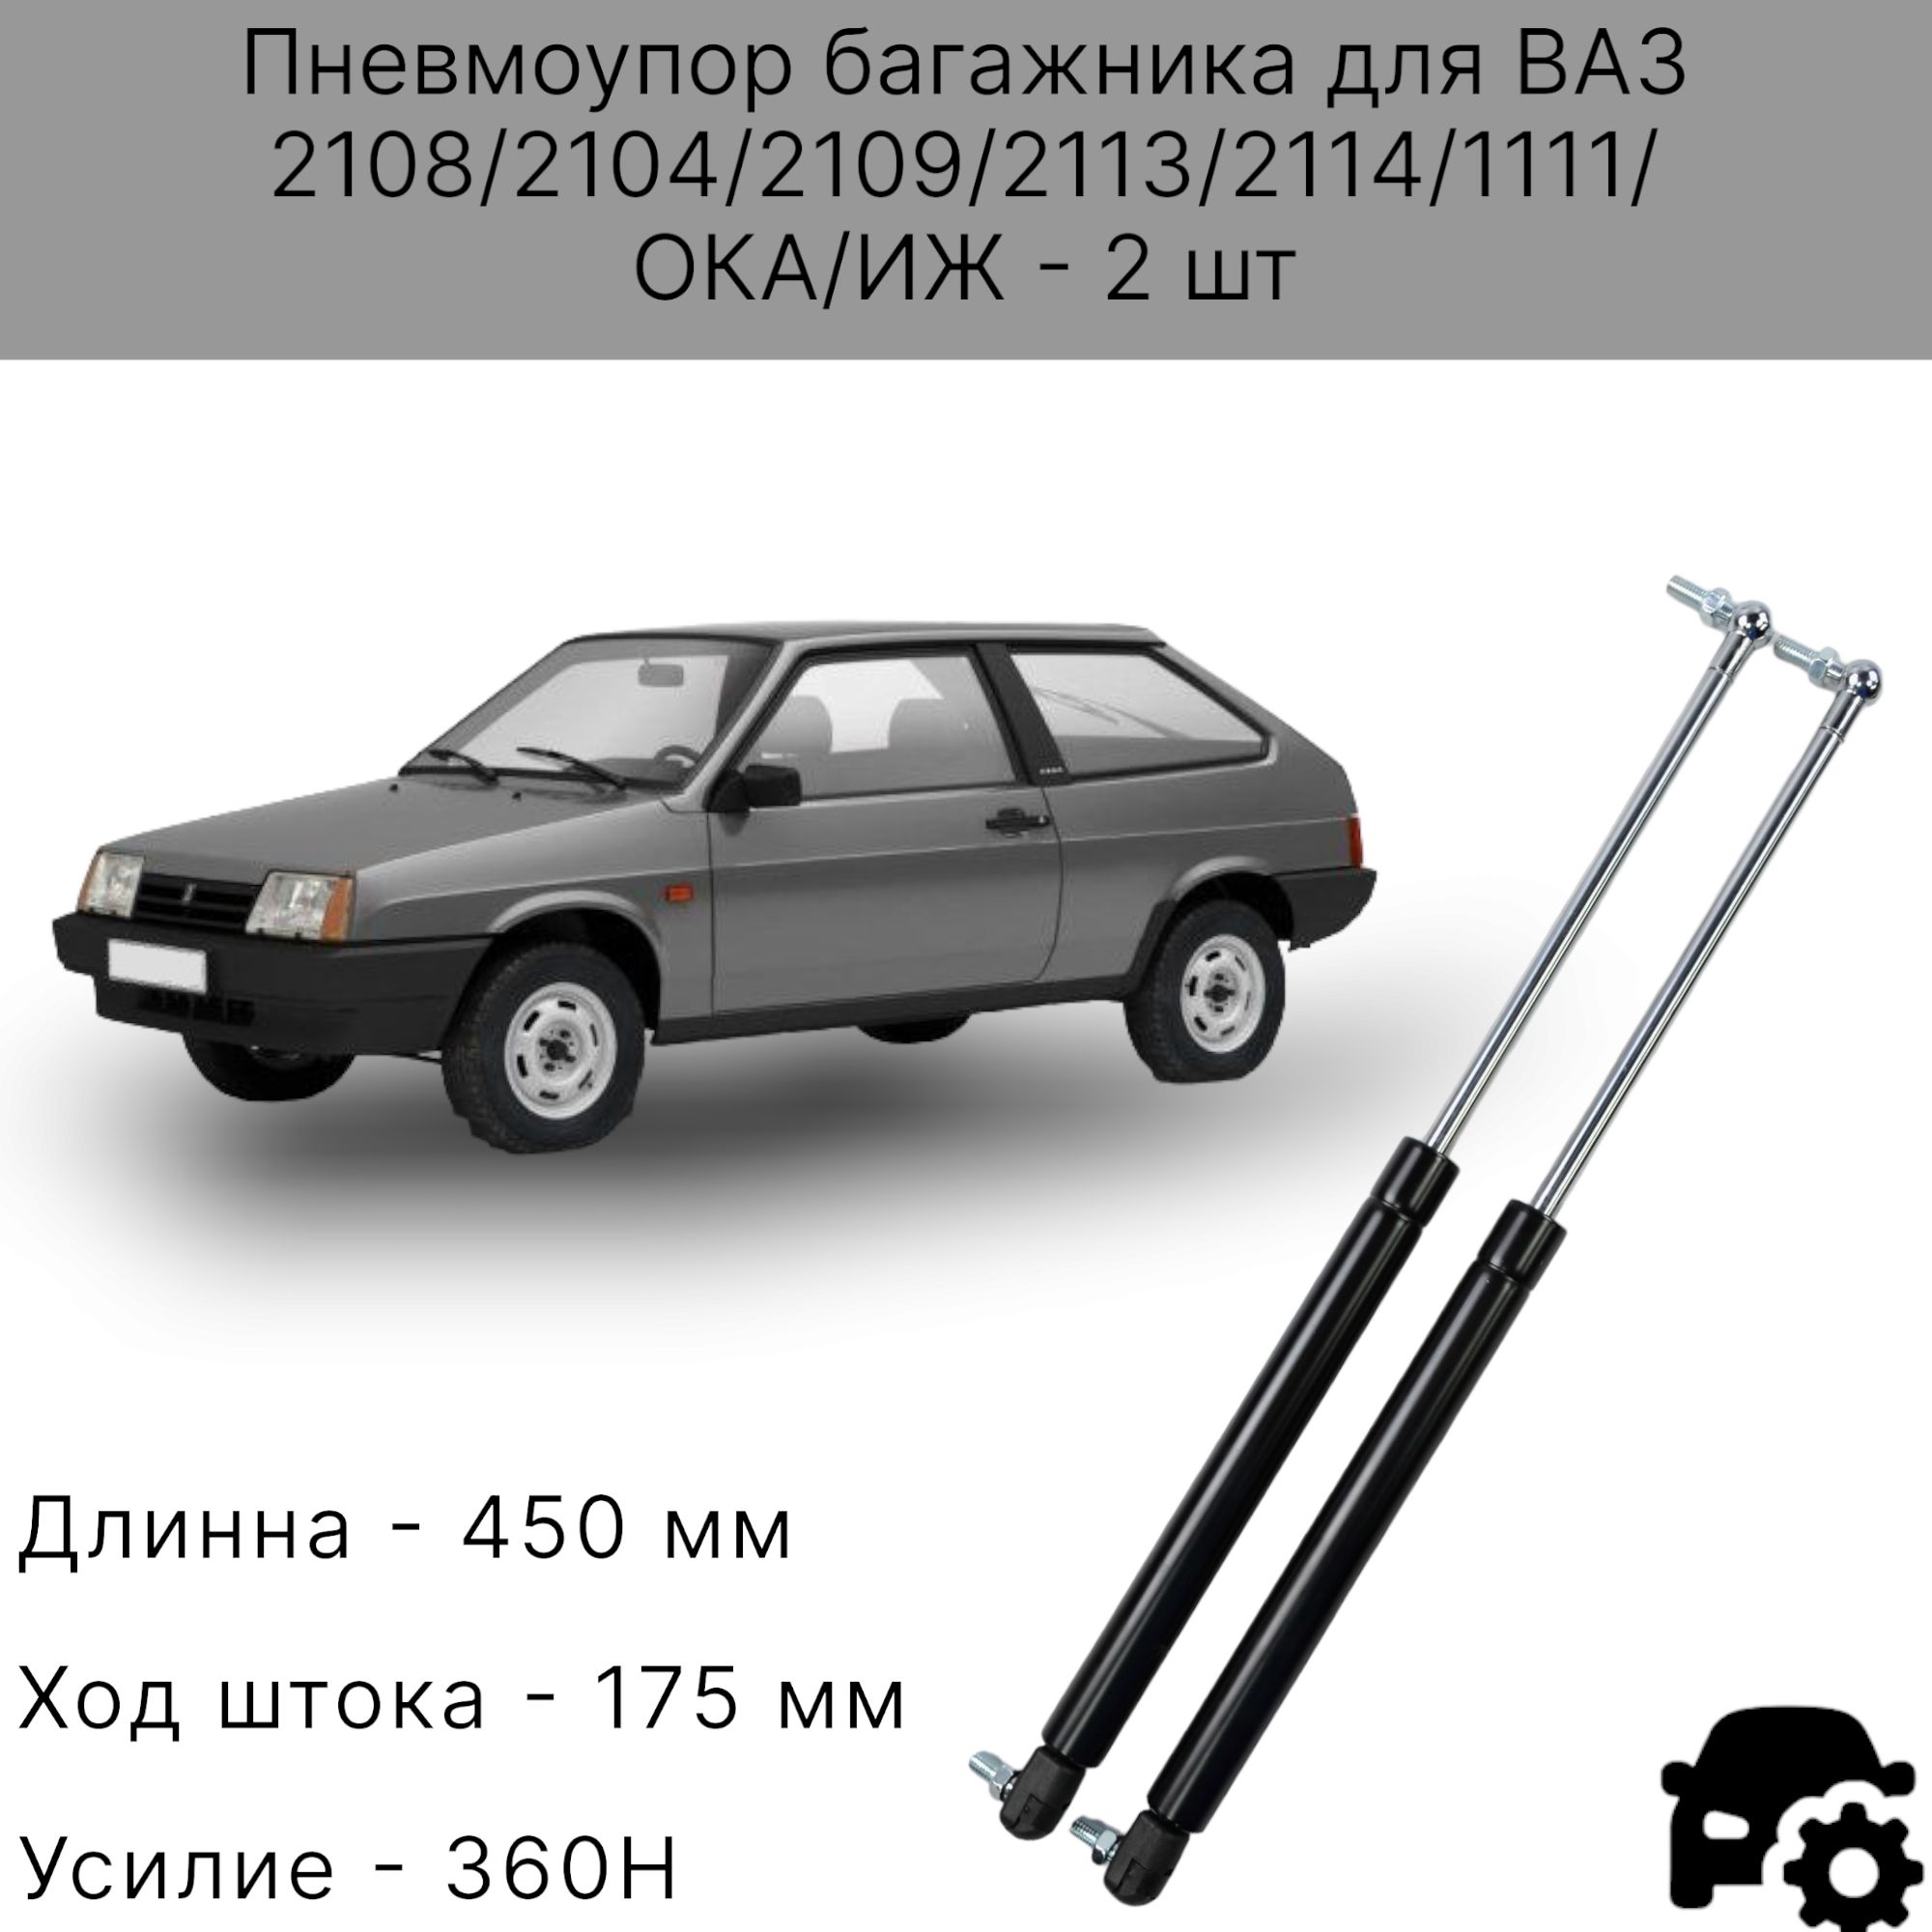 Опоры полки багажника ВАЗ-2108, -2109, -2113 и -2114, комплект ОАО 